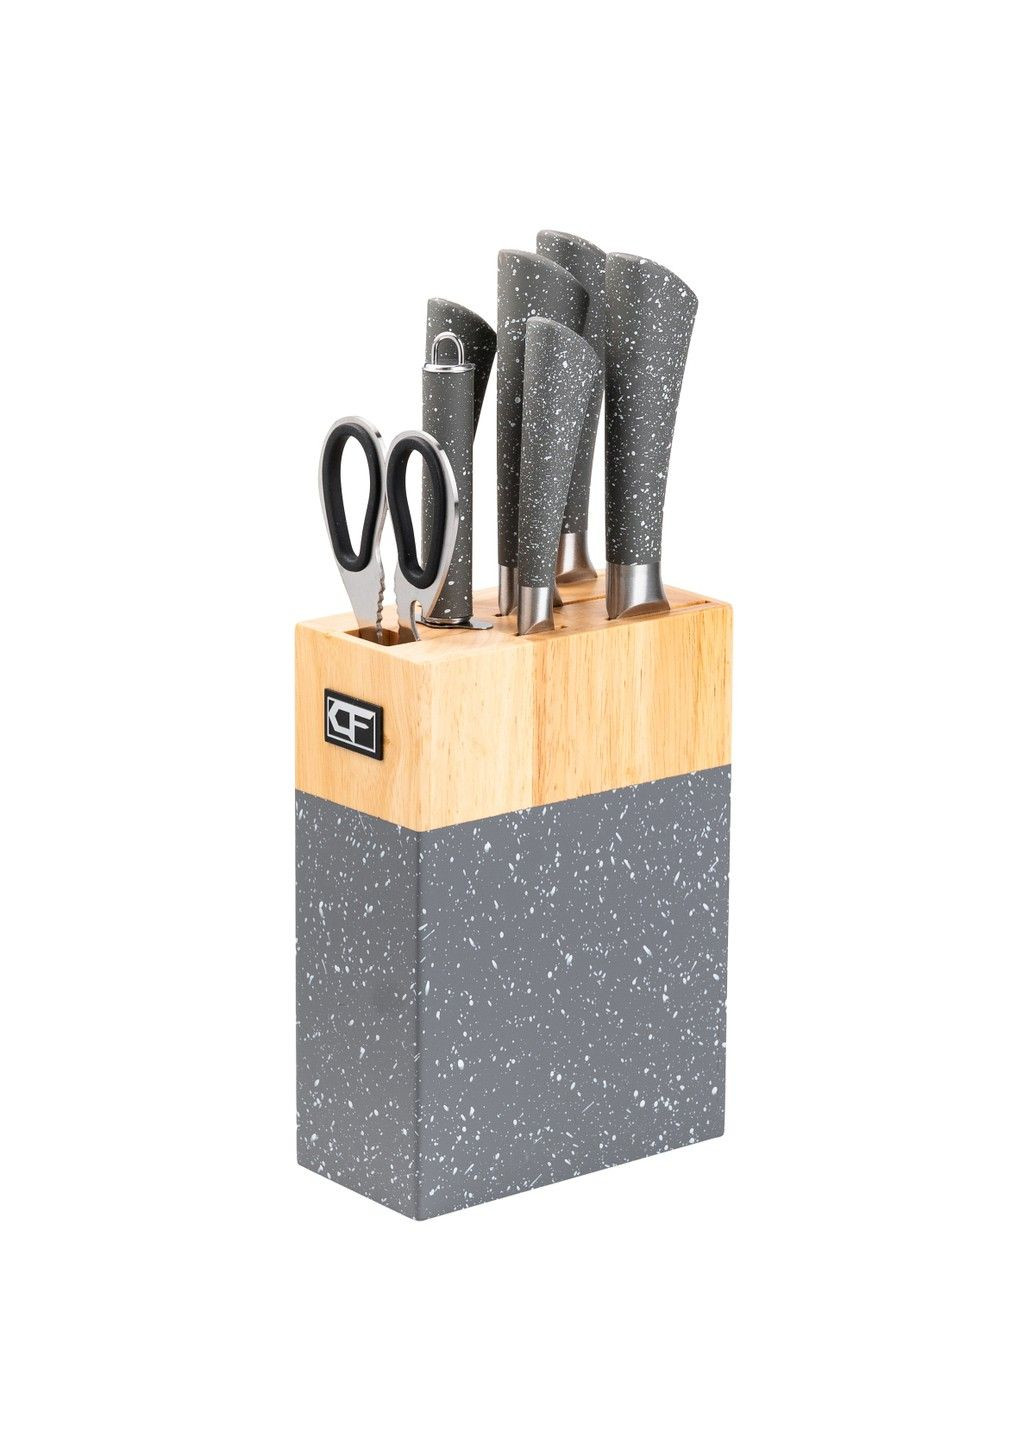 Набір кухонних ножів на підставці 8 штук, сірий граніт Without (293170787)